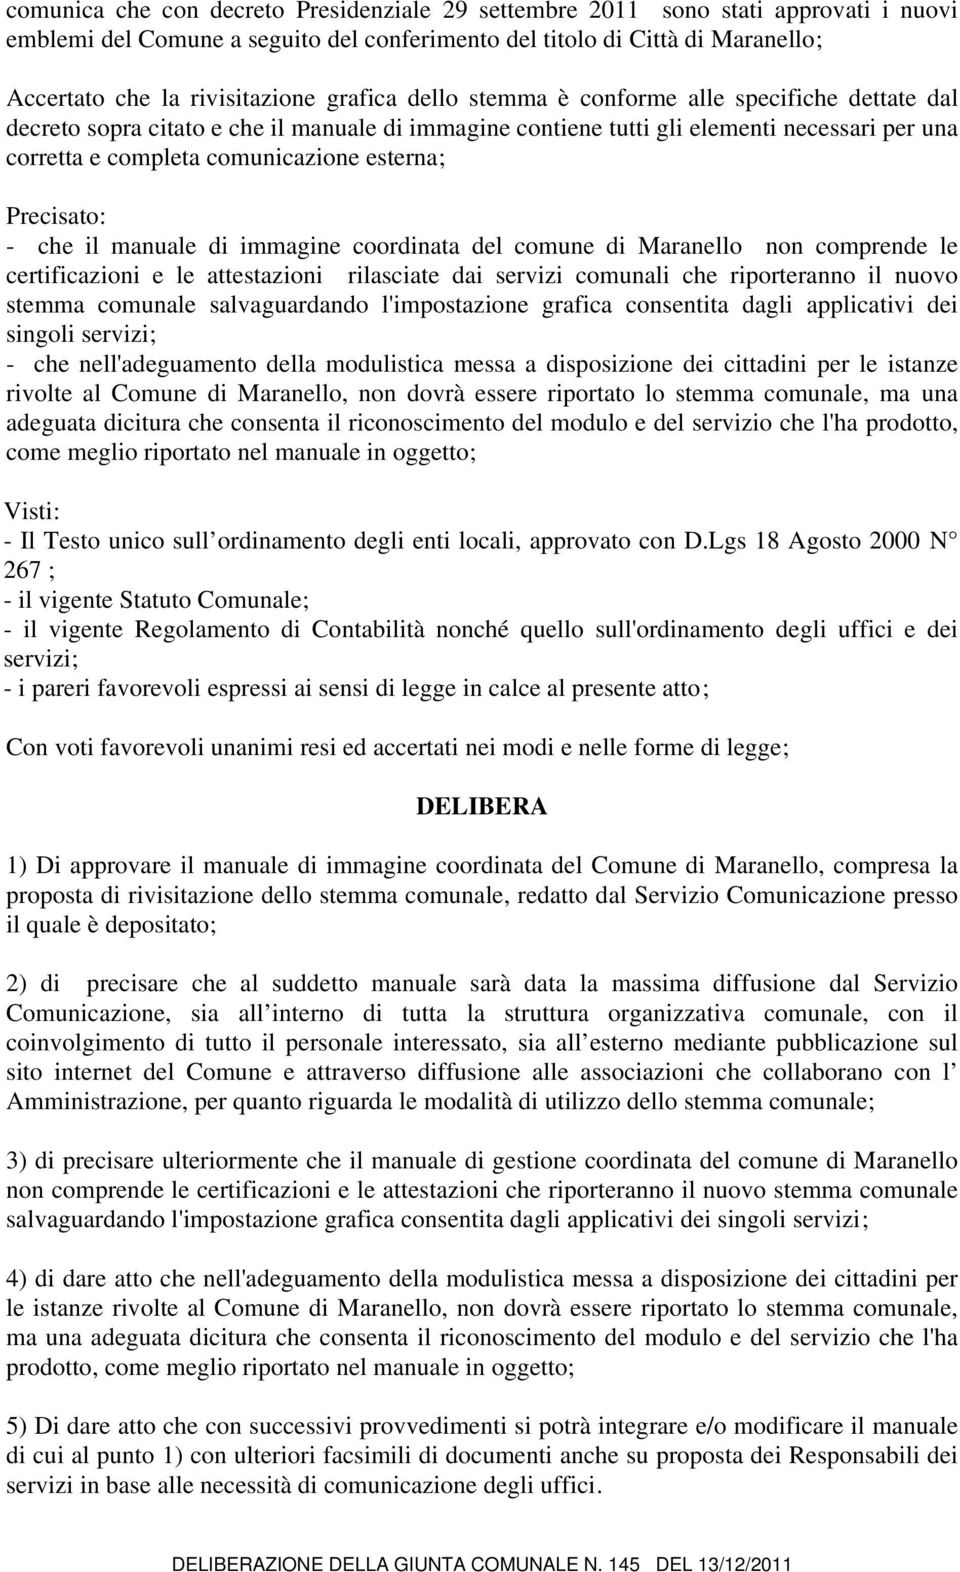 Precisato: - che il manuale di immagine coordinata del comune di Maranello non comprende le certificazioni e le attestazioni rilasciate dai servizi comunali che riporteranno il nuovo stemma comunale